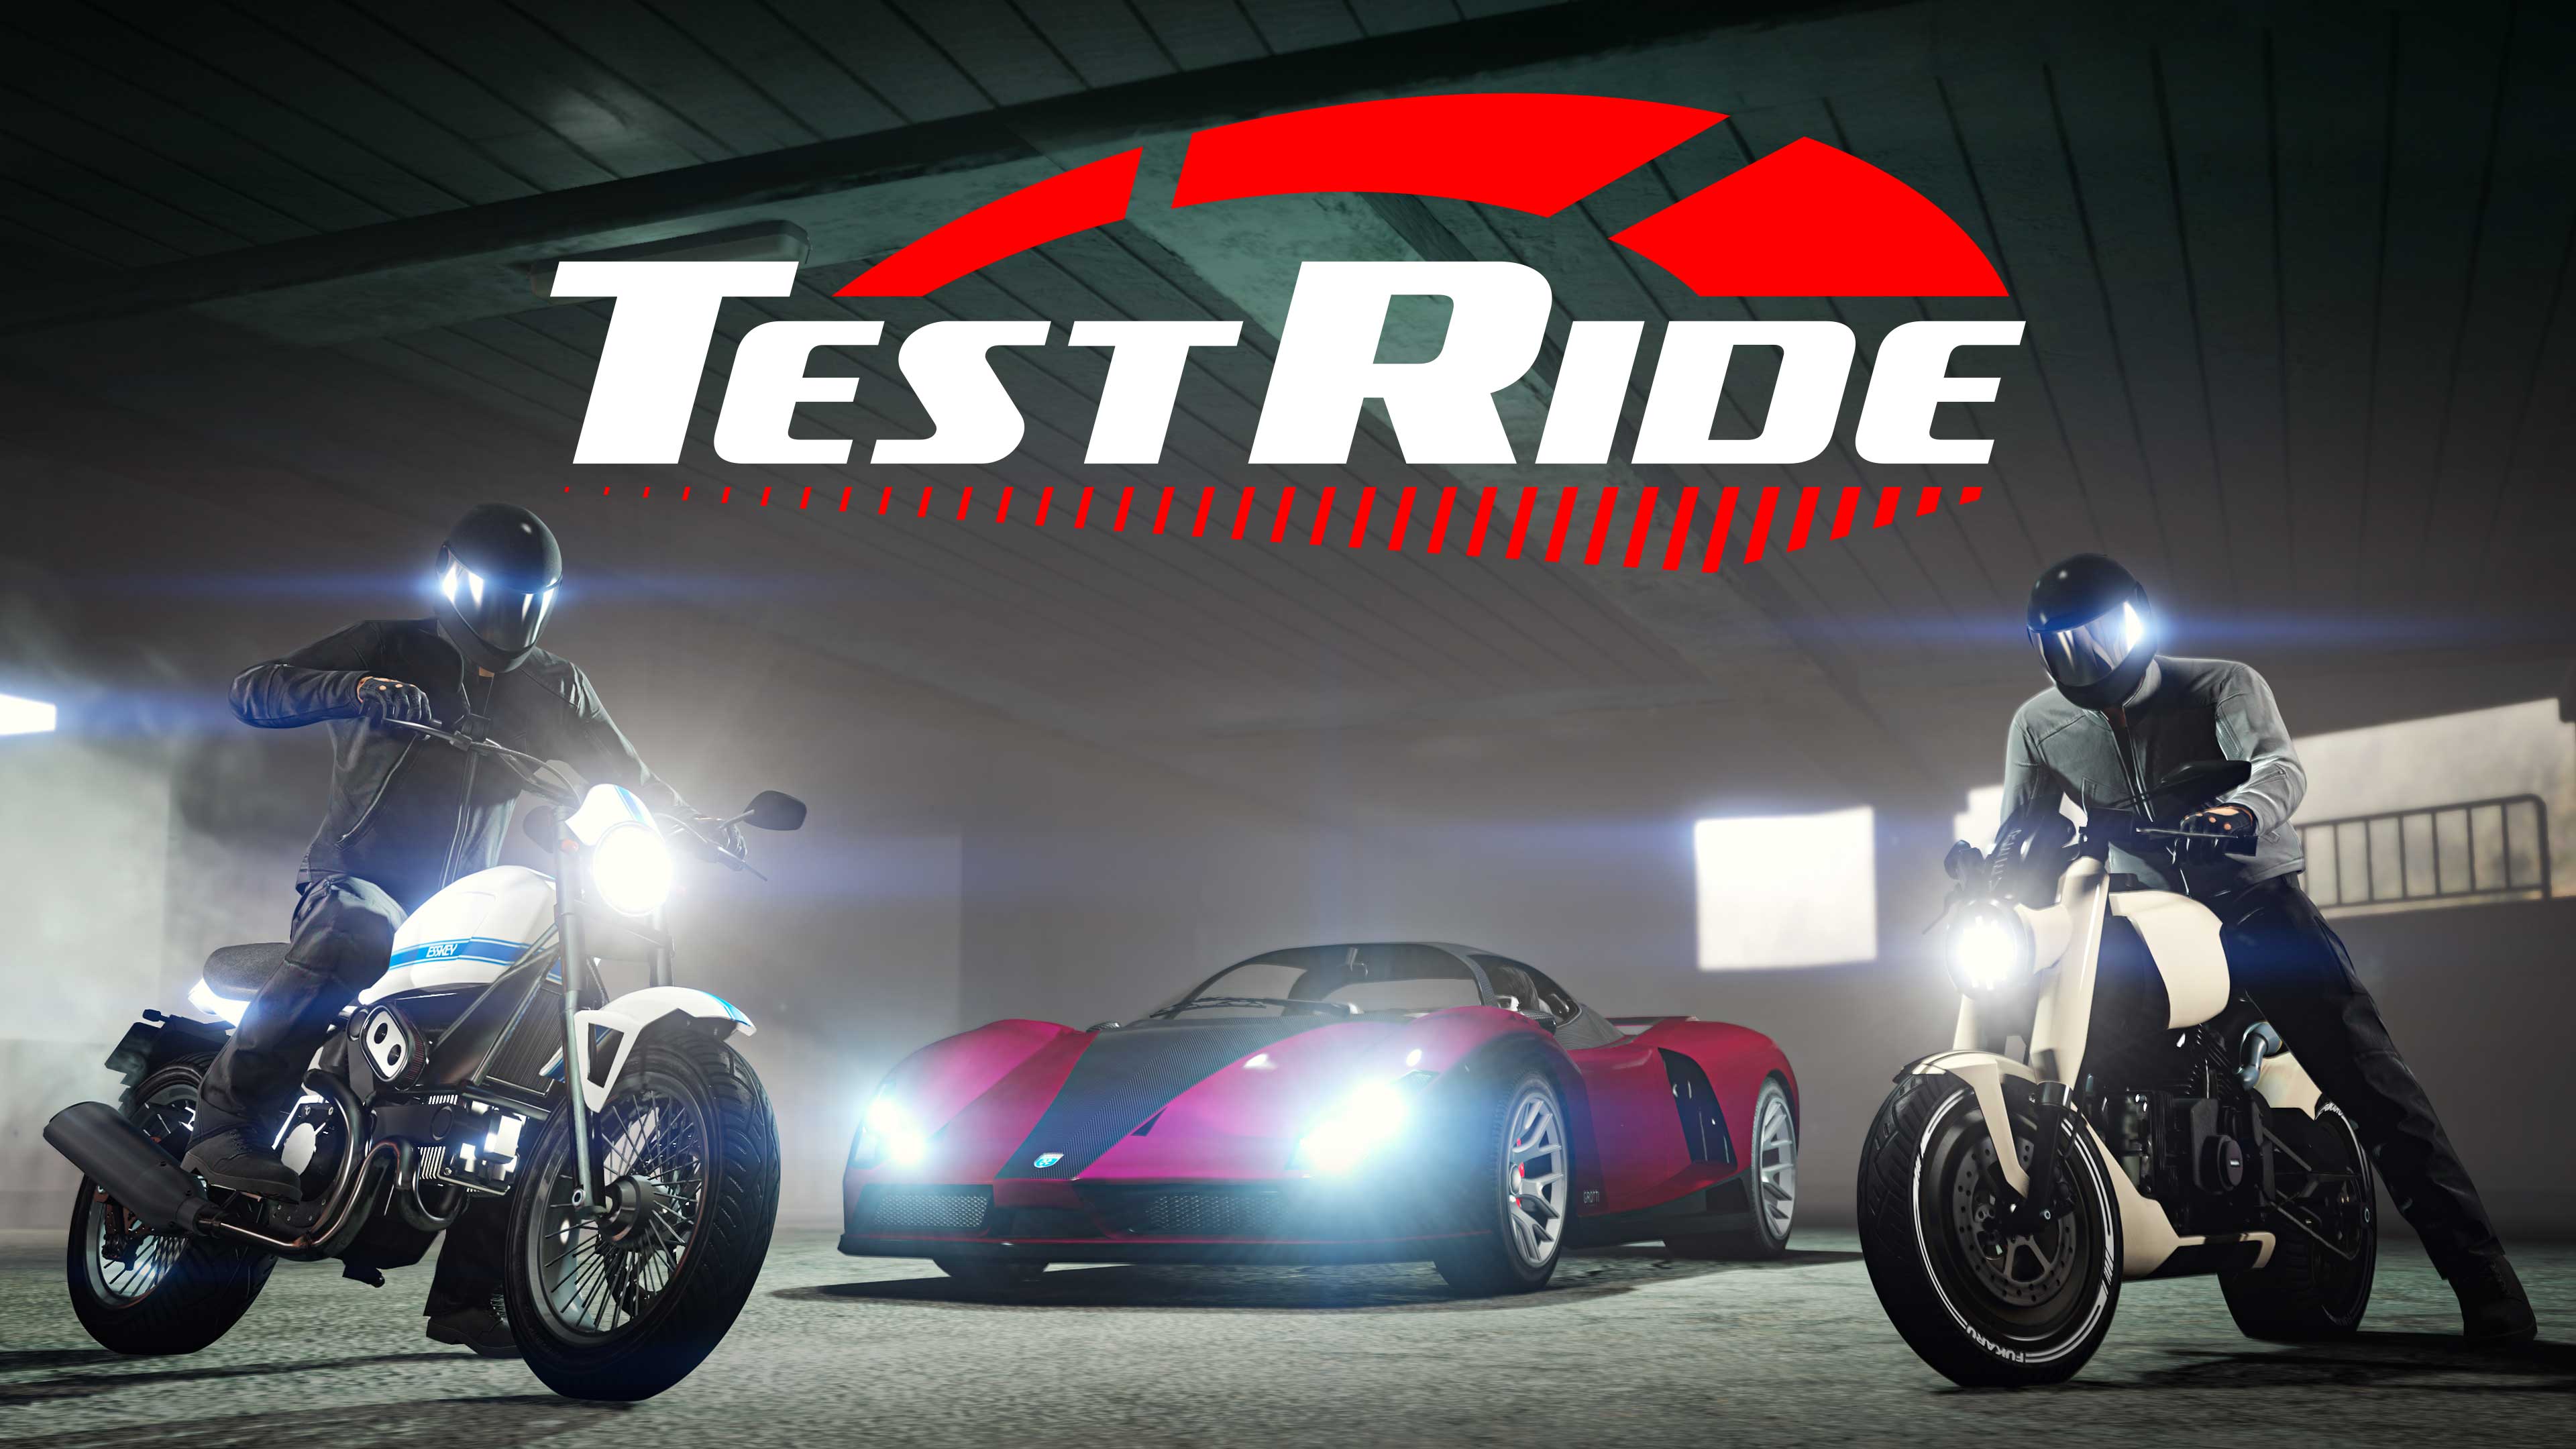 Immagine di GTA Online con il logo Test Ride